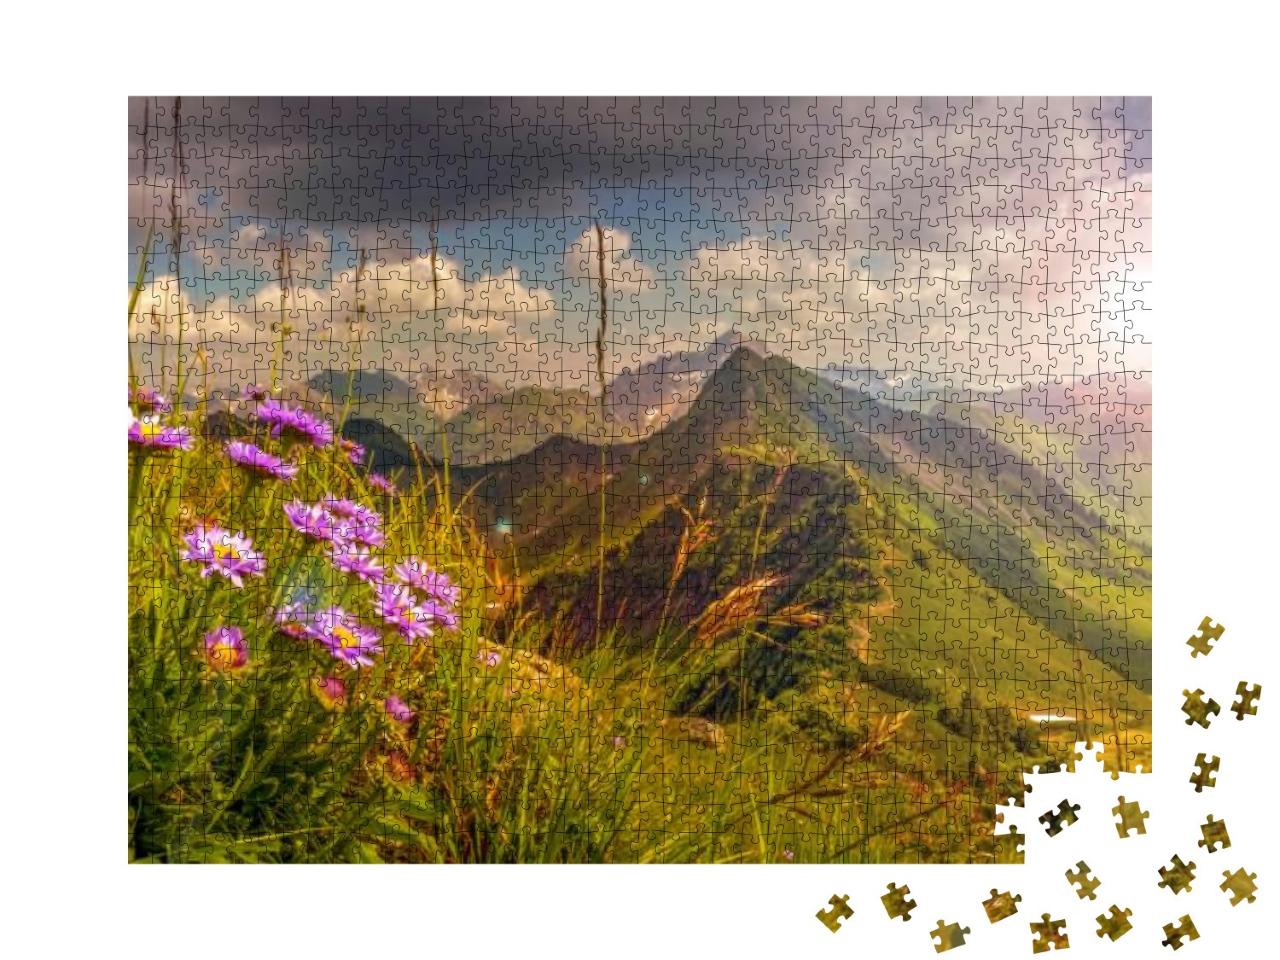 Puzzle 1000 Teile „Sonnenuntergang in den Alpen, Österreich“